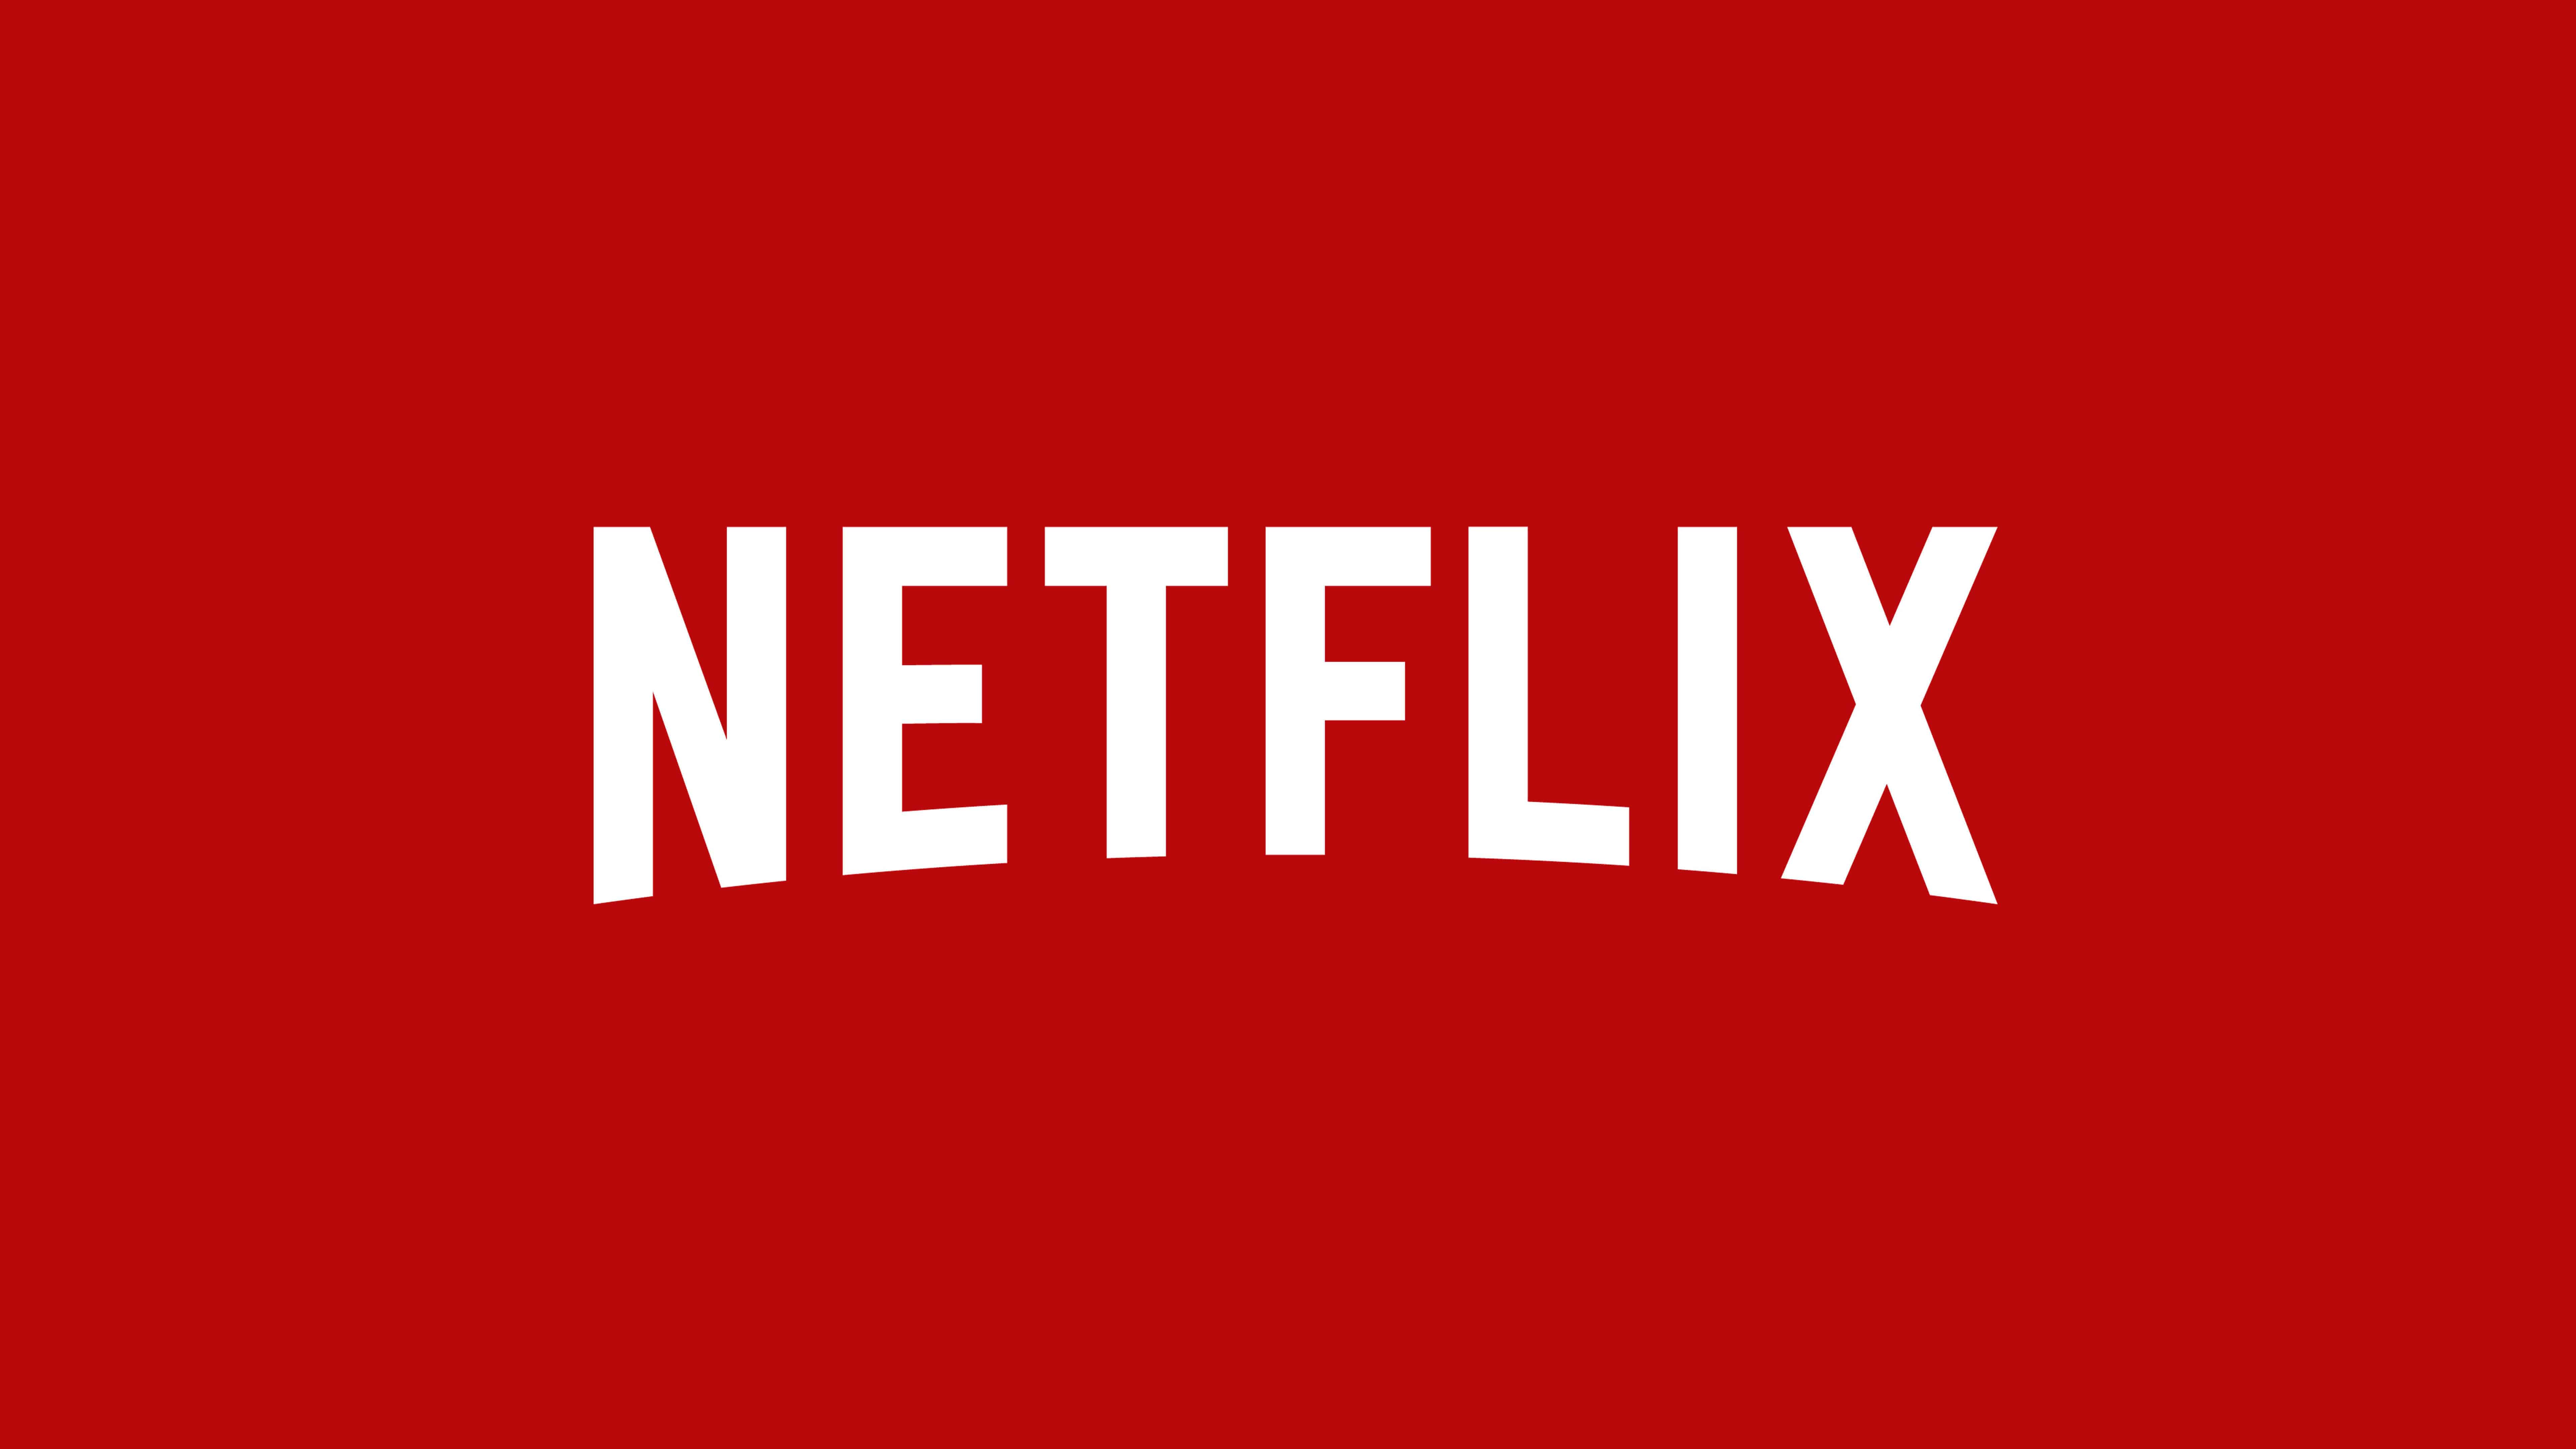 Netflix Wallpapers - Top Free Netflix Backgrounds - WallpaperAccess